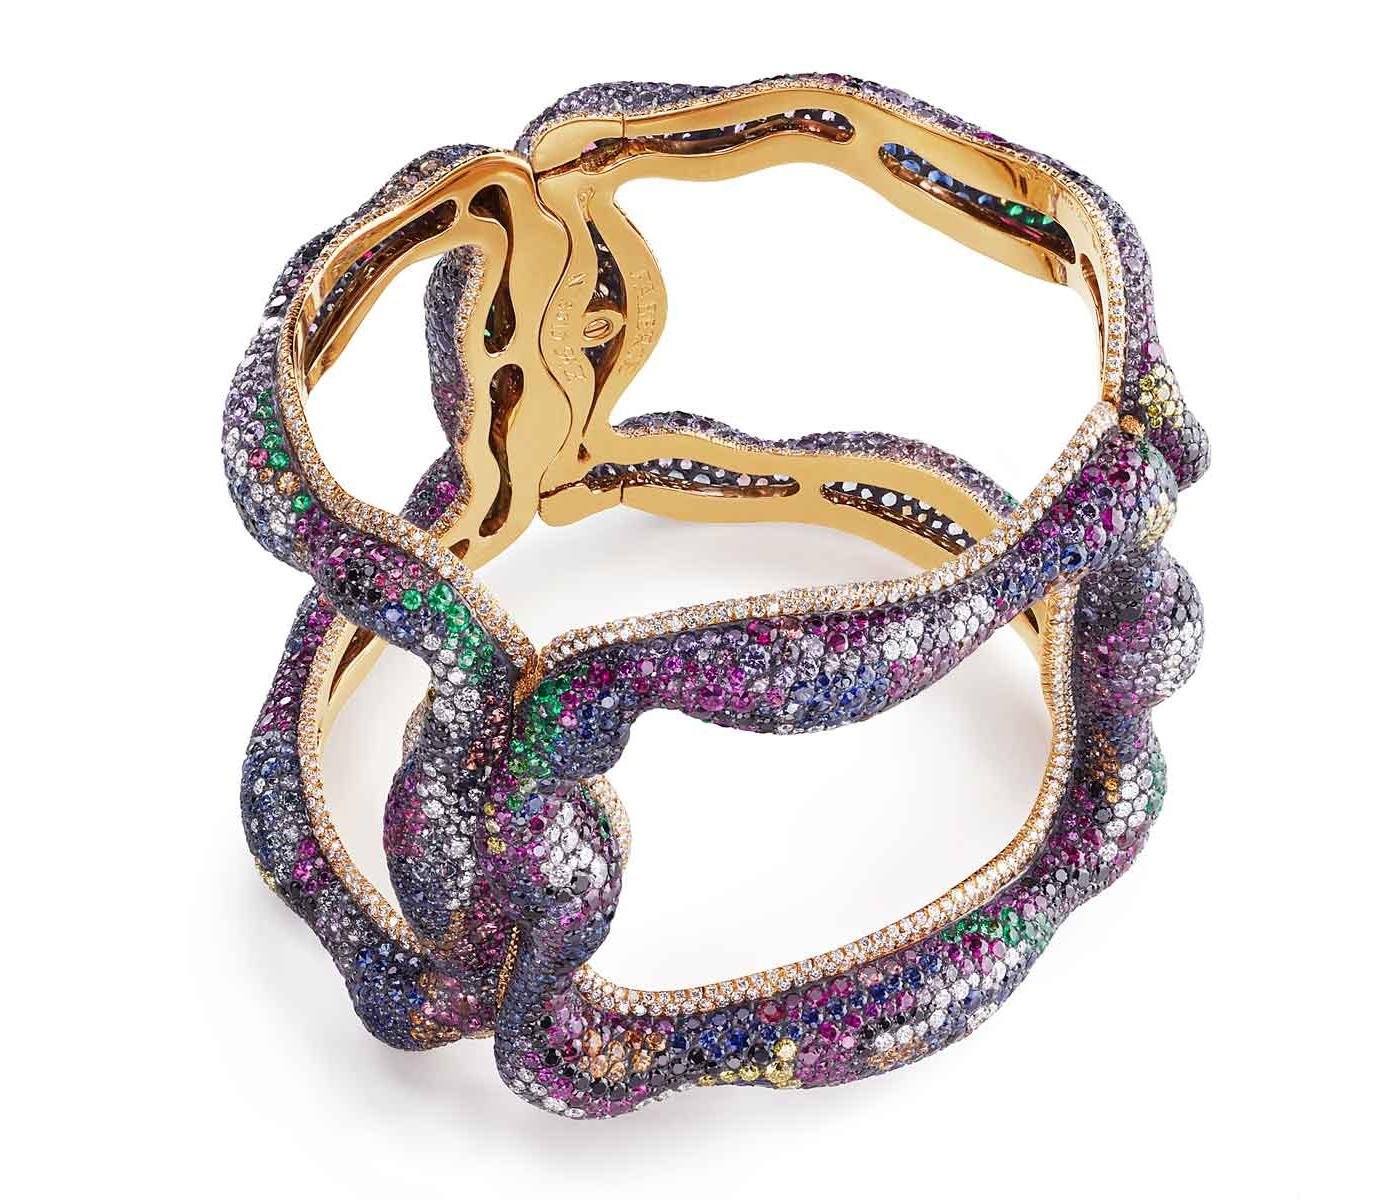 Bracelet by Fabergé